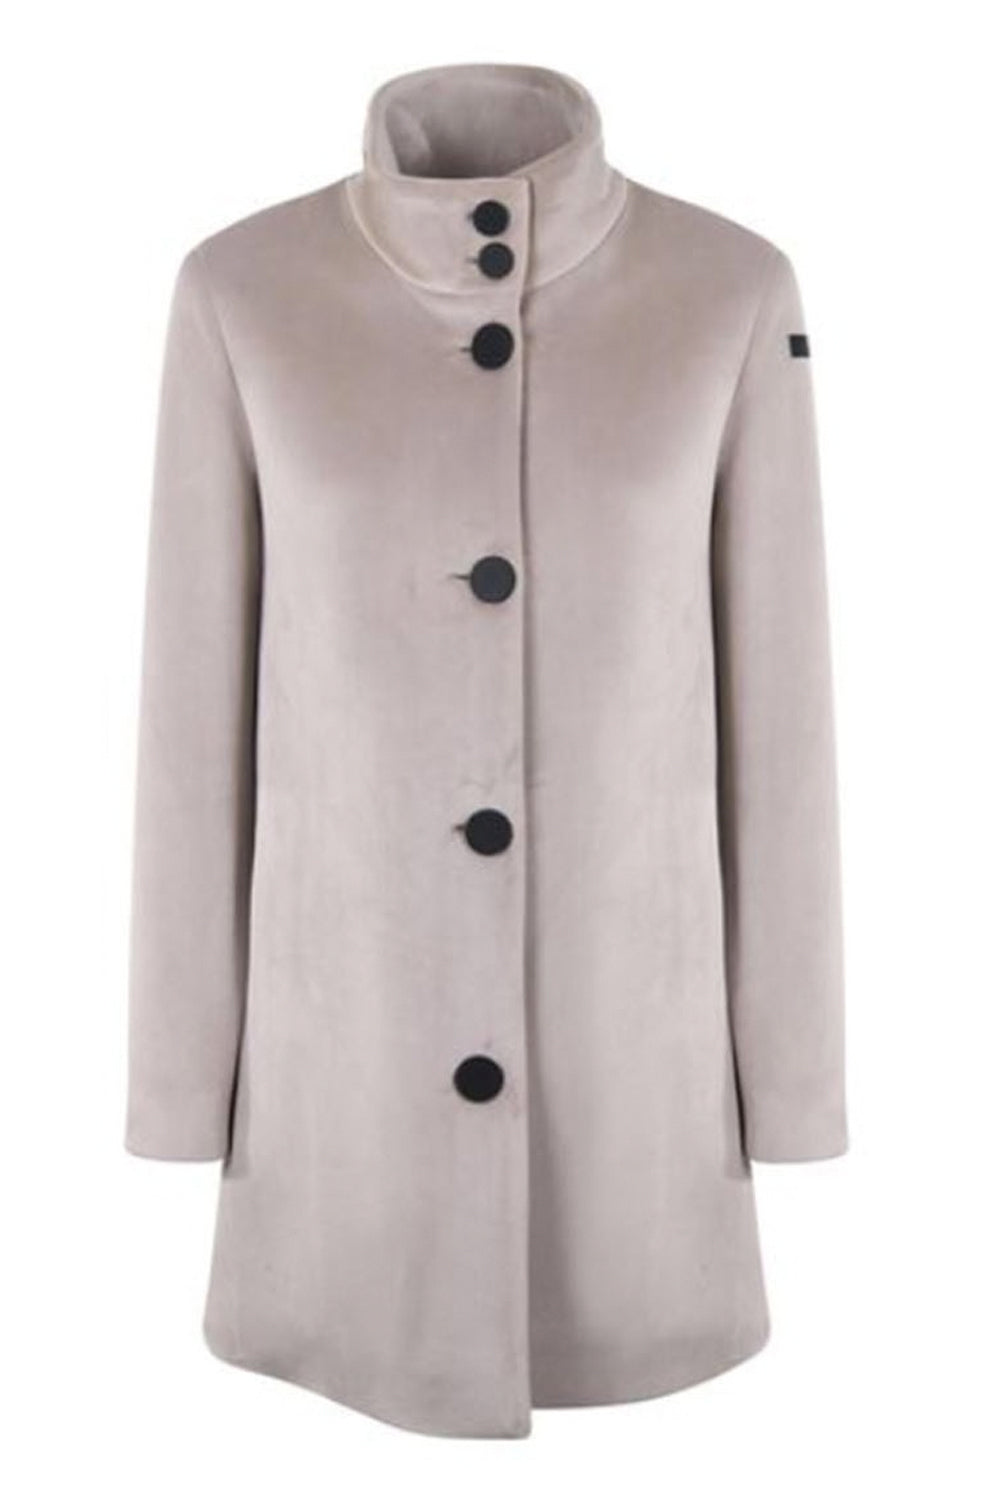 velvet neo coat lady product